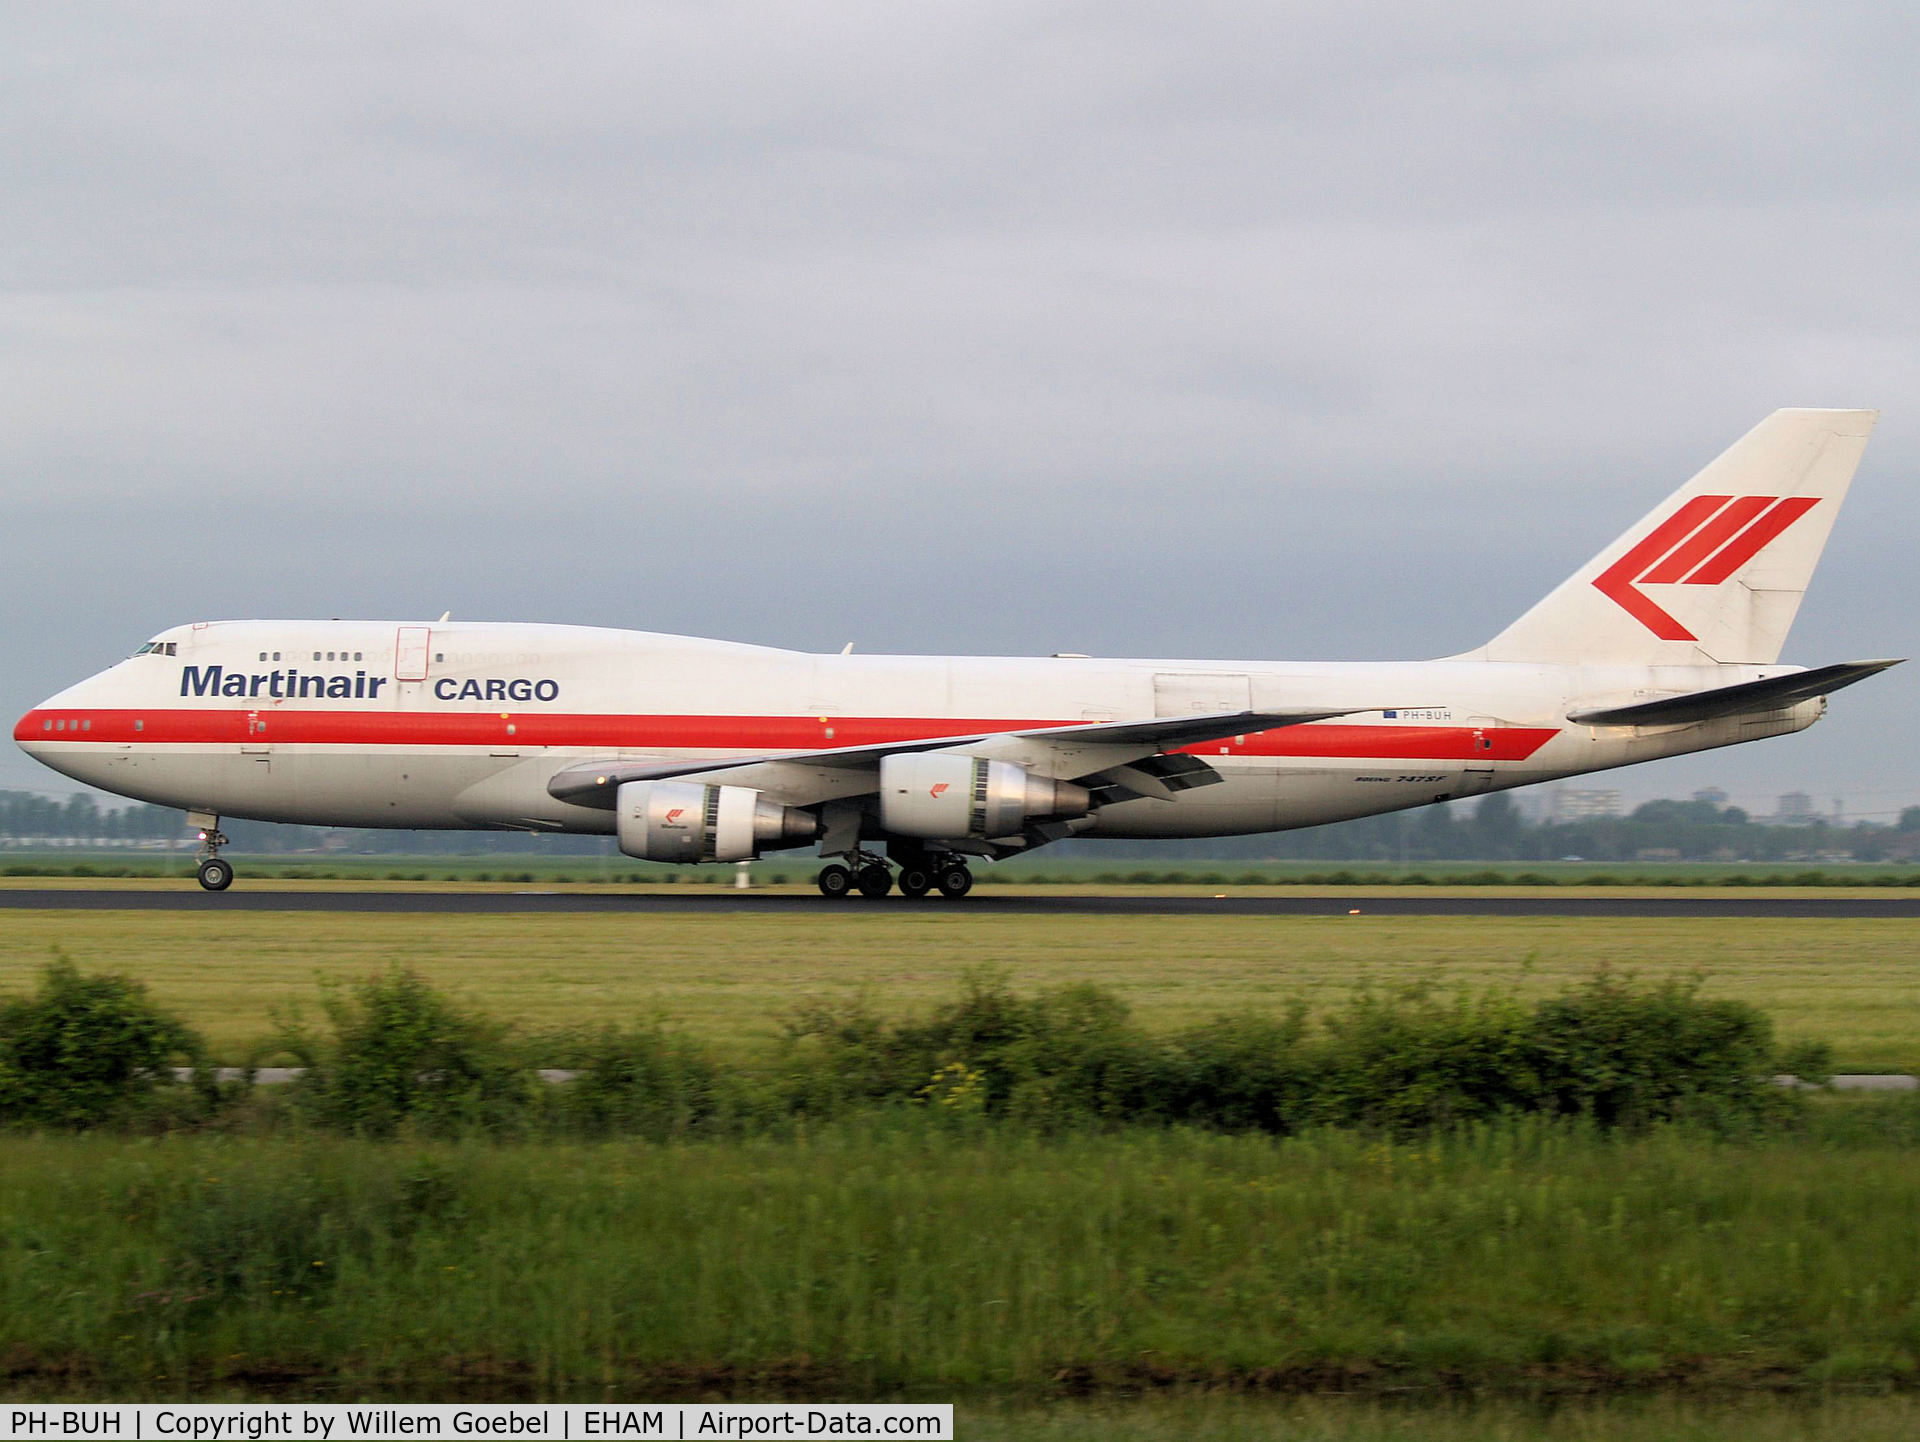 PH-BUH, 1975 Boeing 747-206B C/N 21110, Landing on runway R18 of Amsterdam Airport.